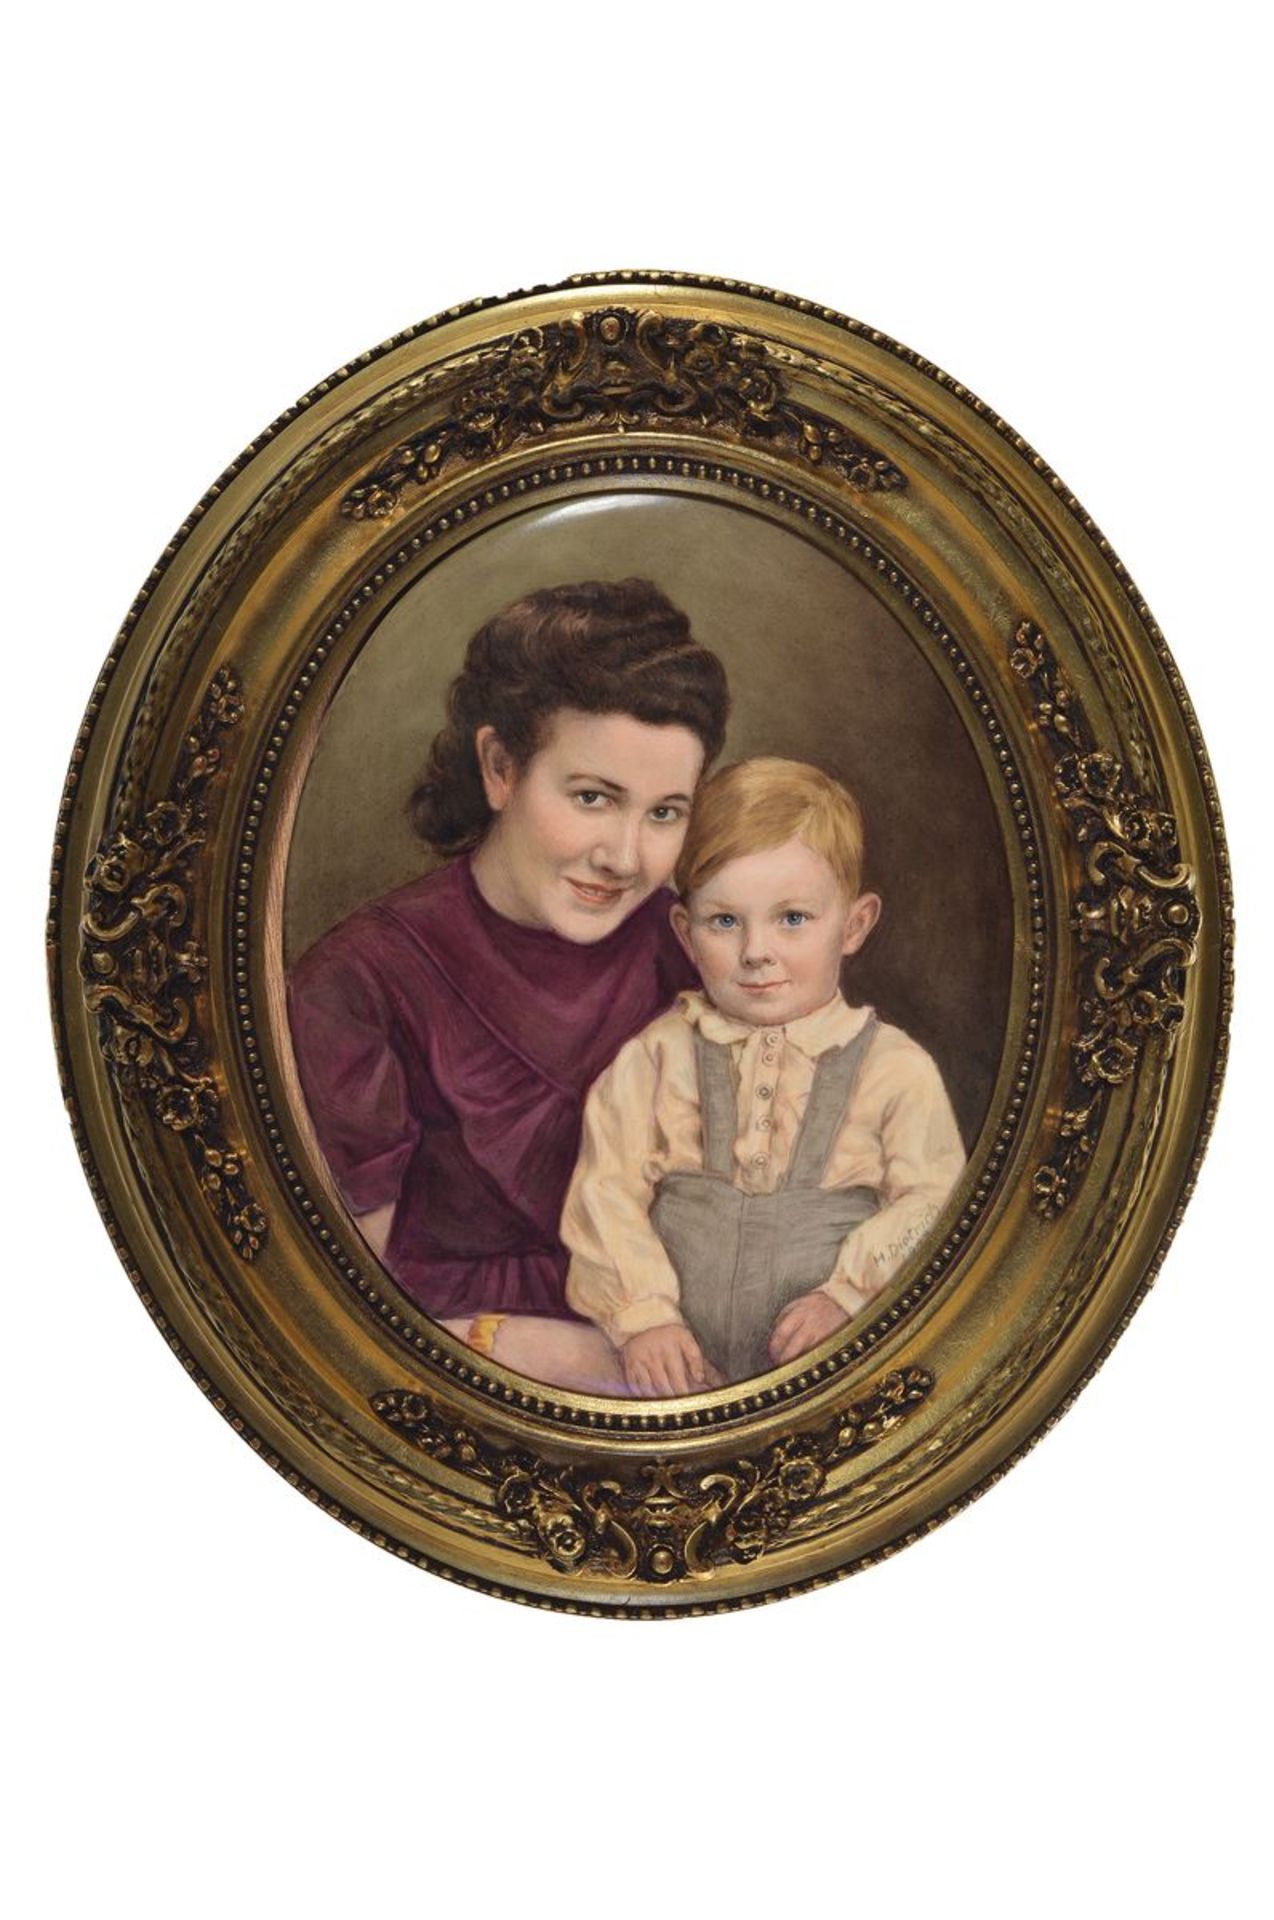 Porzellanbild, Dietrich, dat. 1943, KPM-Platte, feine Handbemalung, Porträt einer jungen Mutter